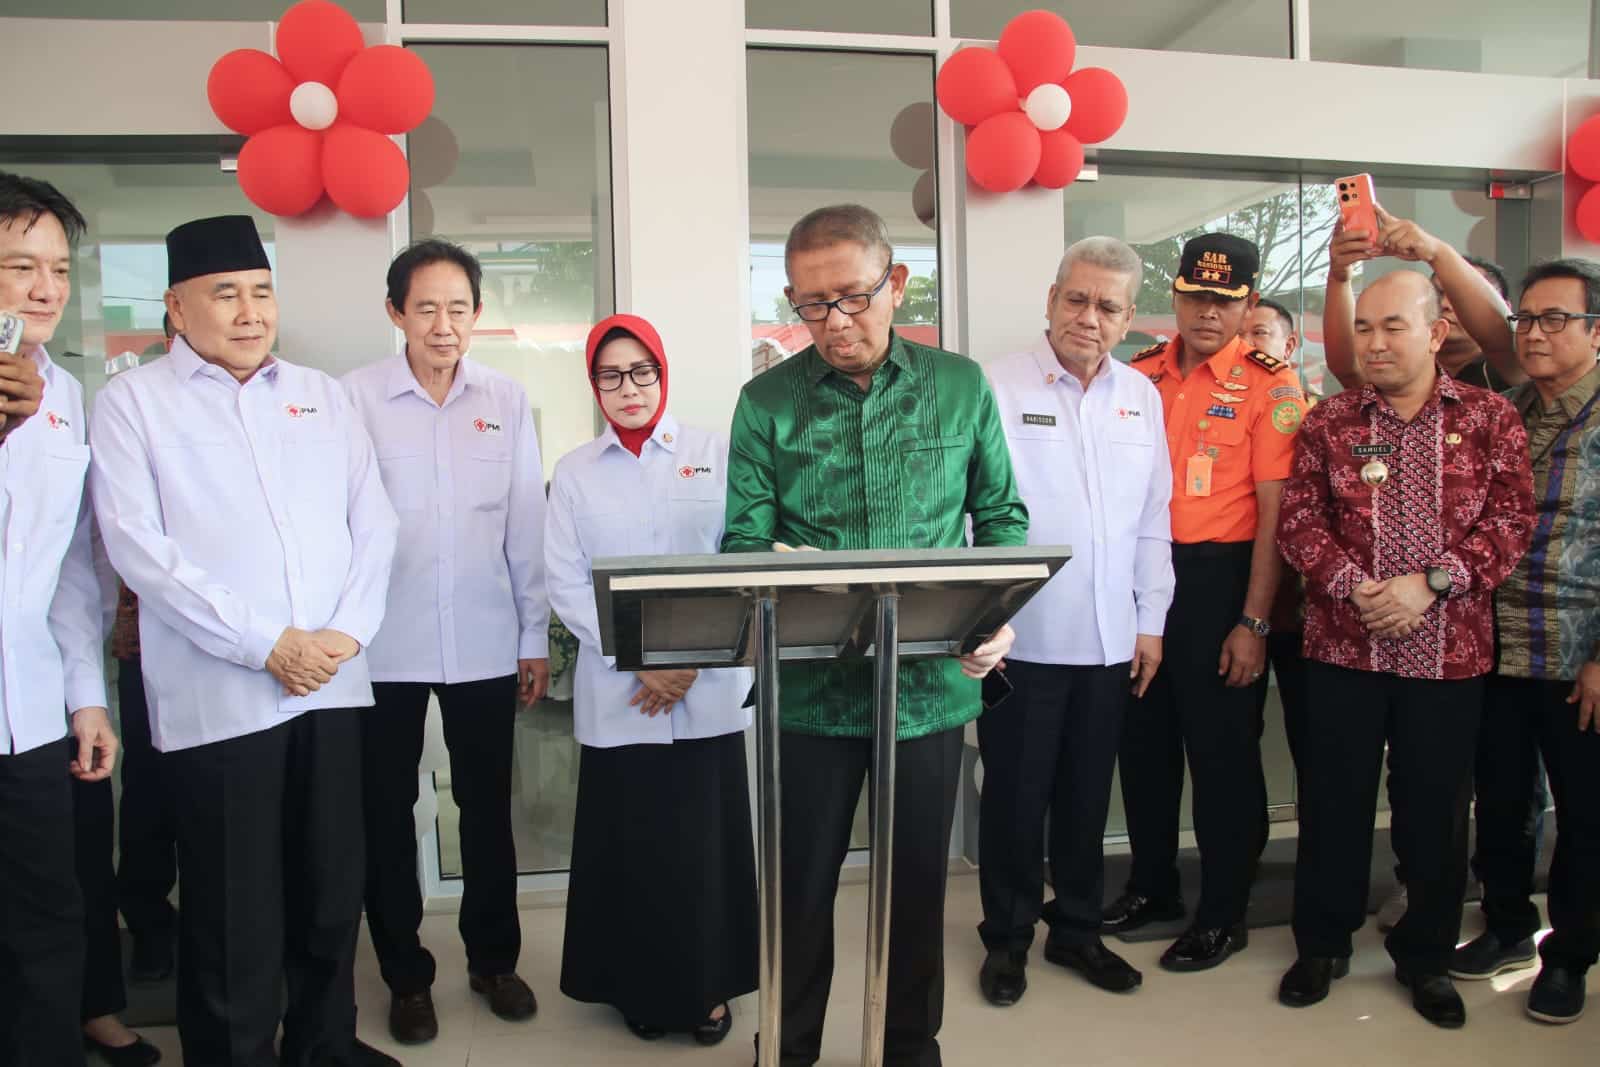 Gubernur Kalbar, Sutarmidji menandatangani prasasti peresmian gedung baru PMI Provinsi Kalbar di Jalan Letjen Sutoyo, Kota Pontianak. (Foto: Biro Adpim For KalbarOnline.com)